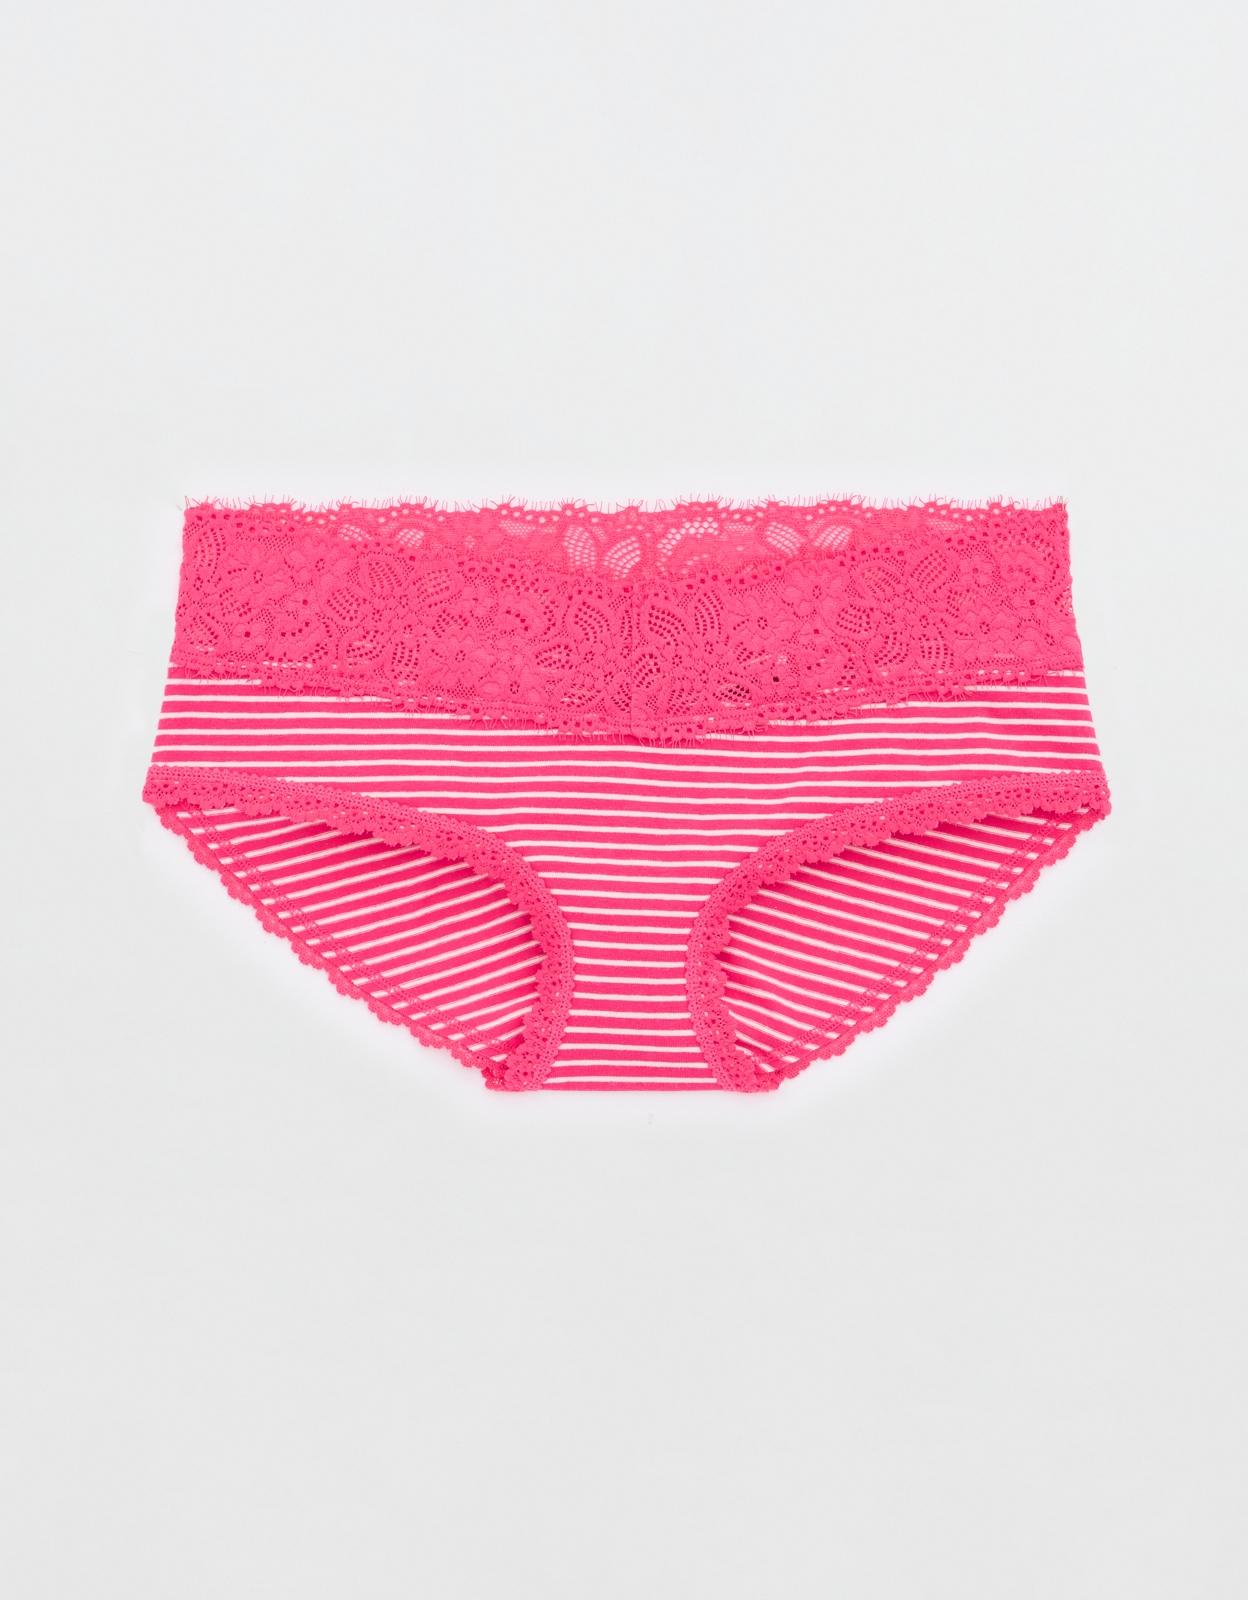 Buy Aerie Cotton Eyelash Lace Boybrief Underwear online